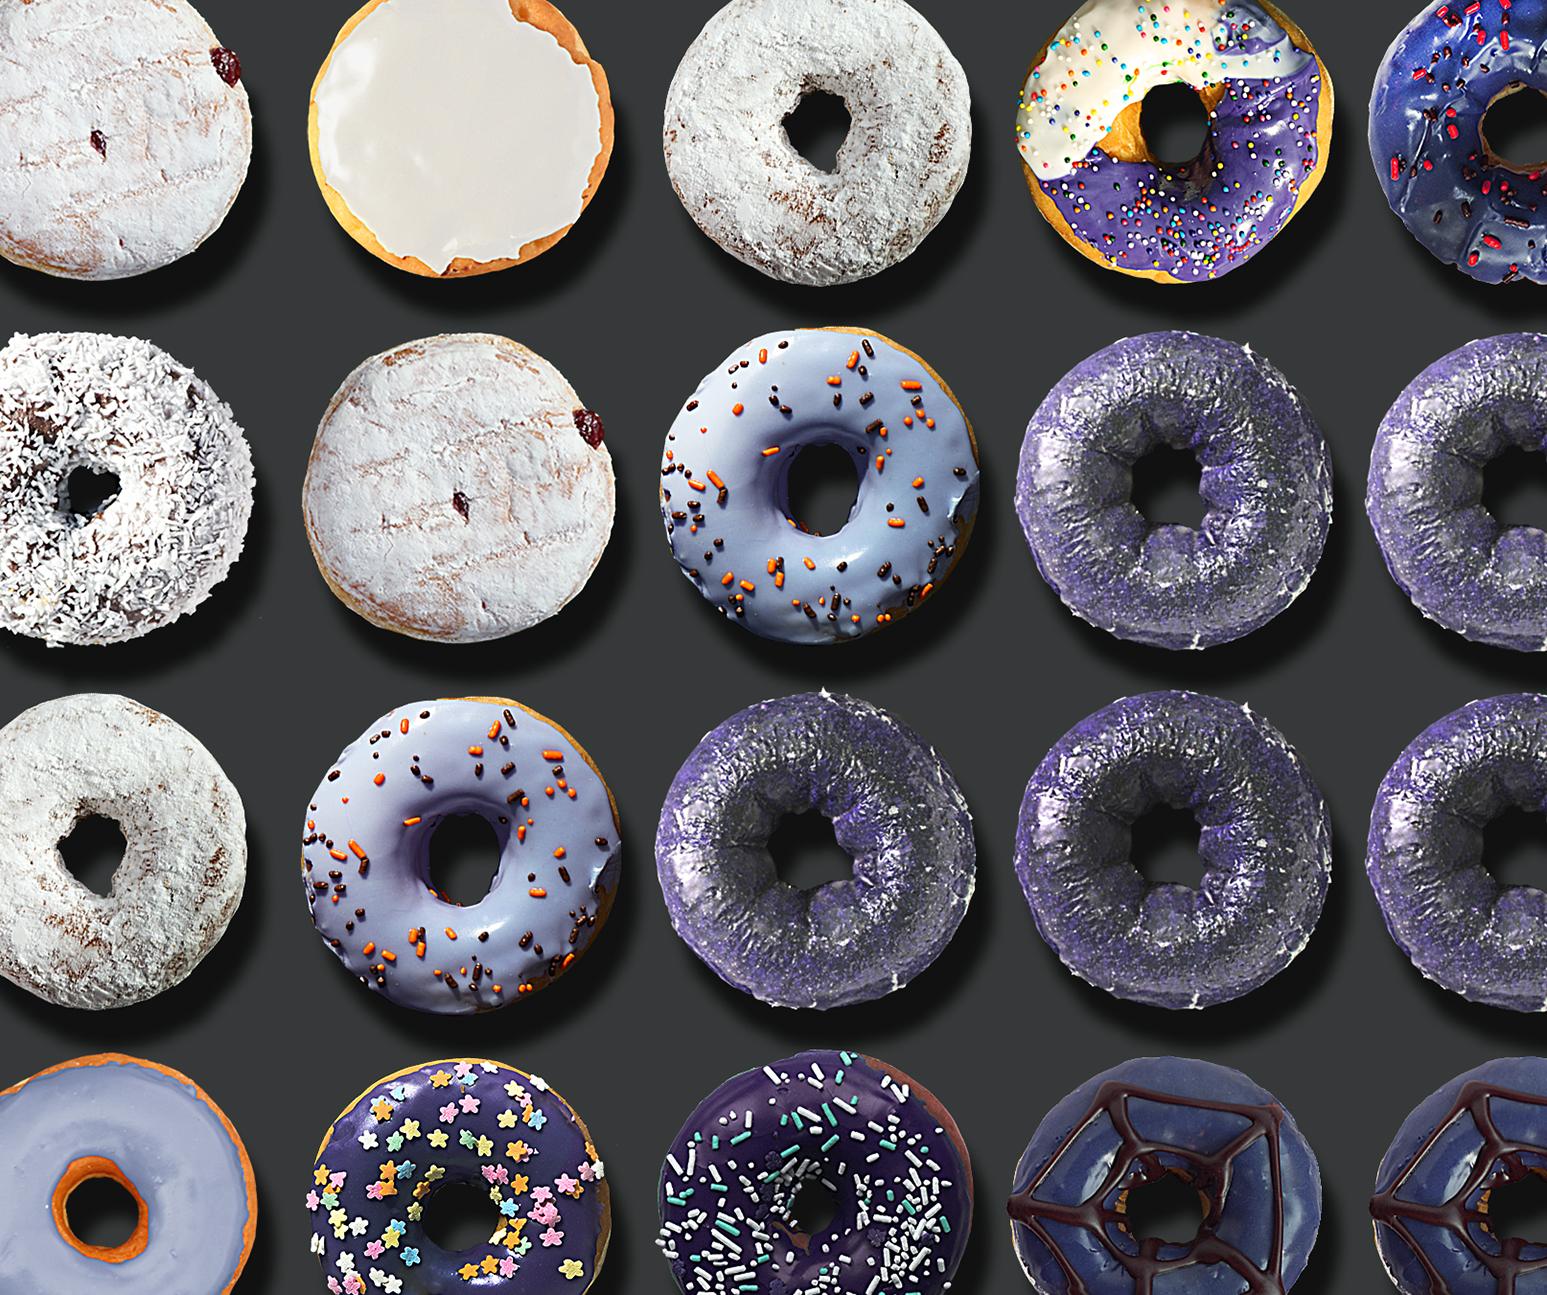 Sie haben in den sozialen Medien weltweit von den außergewöhnlichen Donut-Porträts von Candice CMC gelesen, und wir sind begeistert und stolz, ihre Arbeit zu vertreten.
Wir haben dieser Auflistung ein Bild aus dem weltweiten Social Media Buzz über